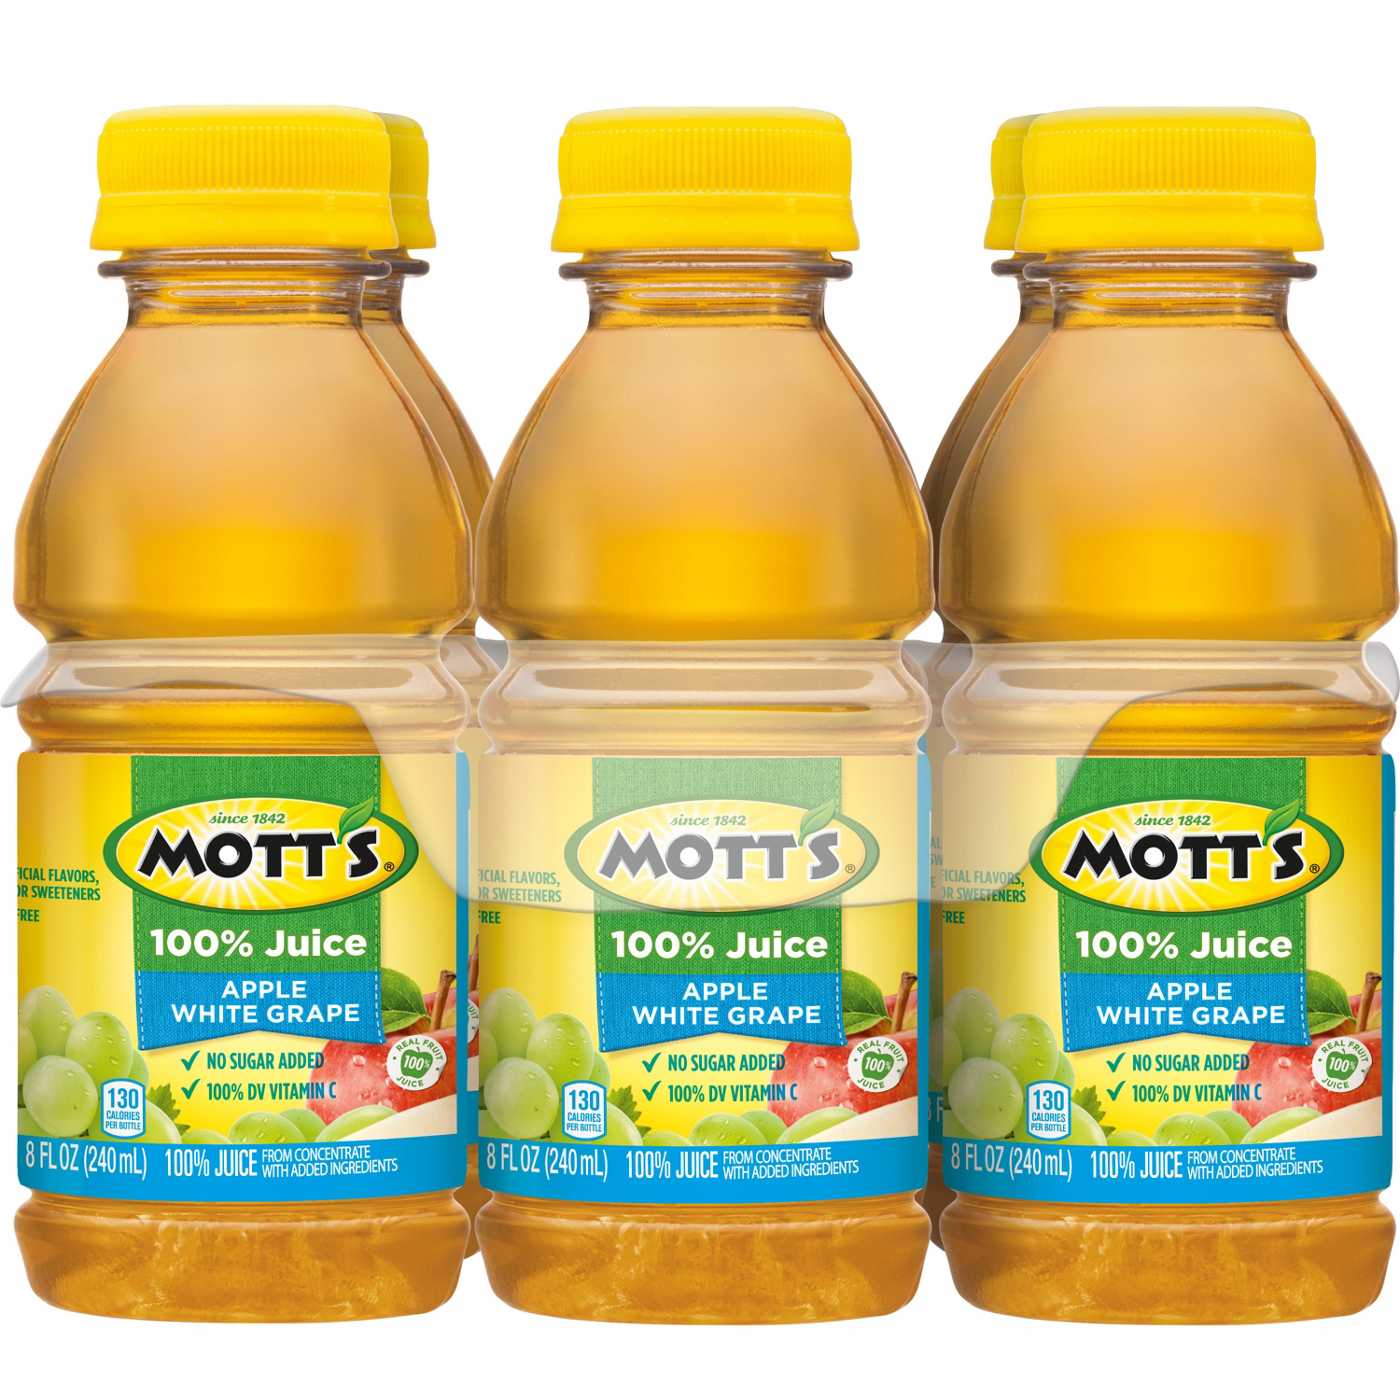 Mott's 100% Apple White Grape Juice 8 oz Bottles; image 1 of 6